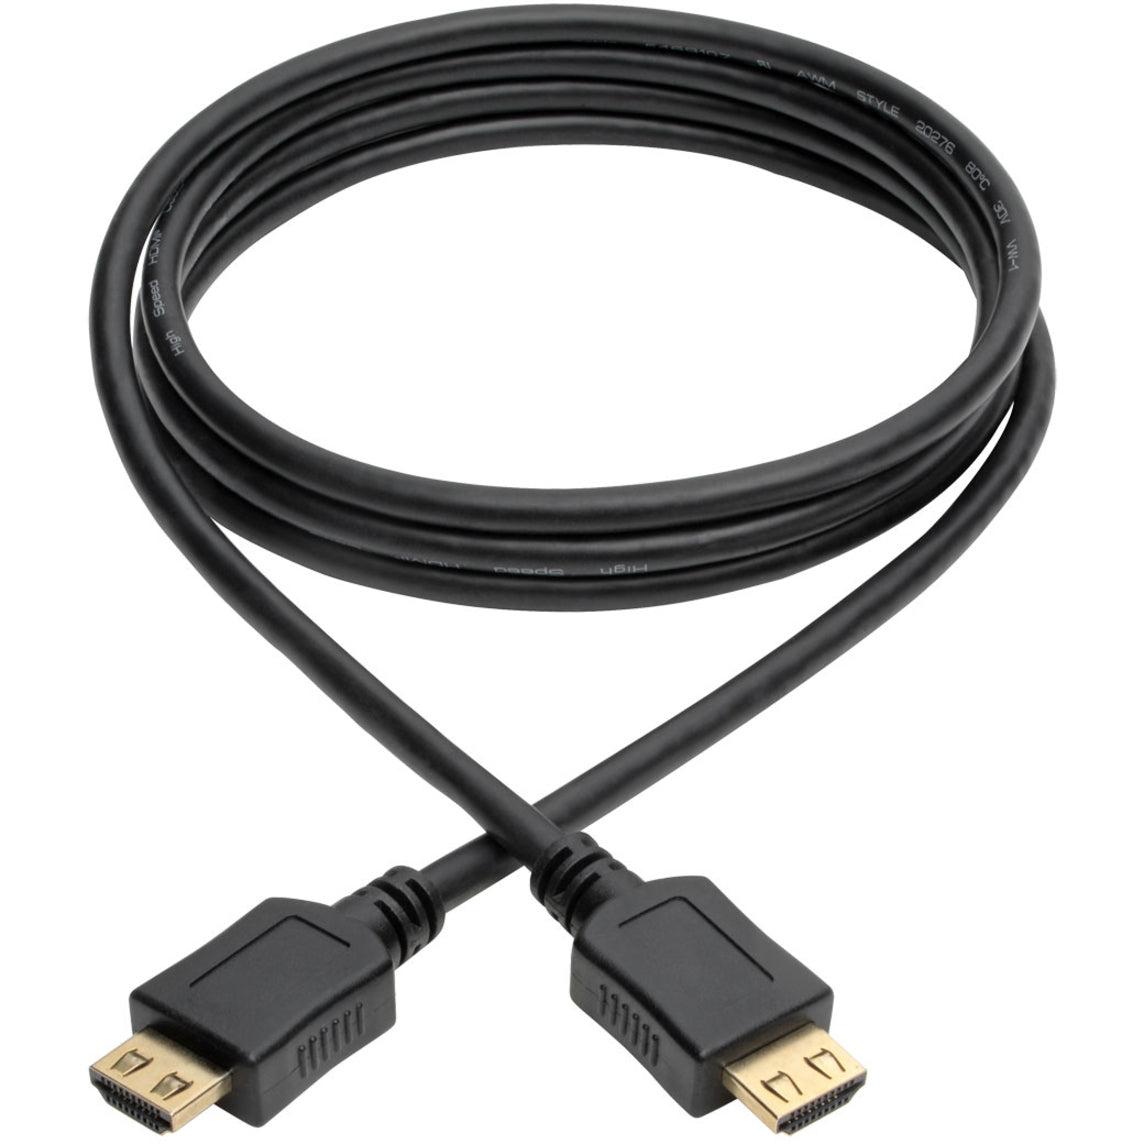 Tripp Lite P568-006-BK-GRP High-Speed HDMI-Kabel 6 ft. mit Griffverbindern - 4K Schwarz